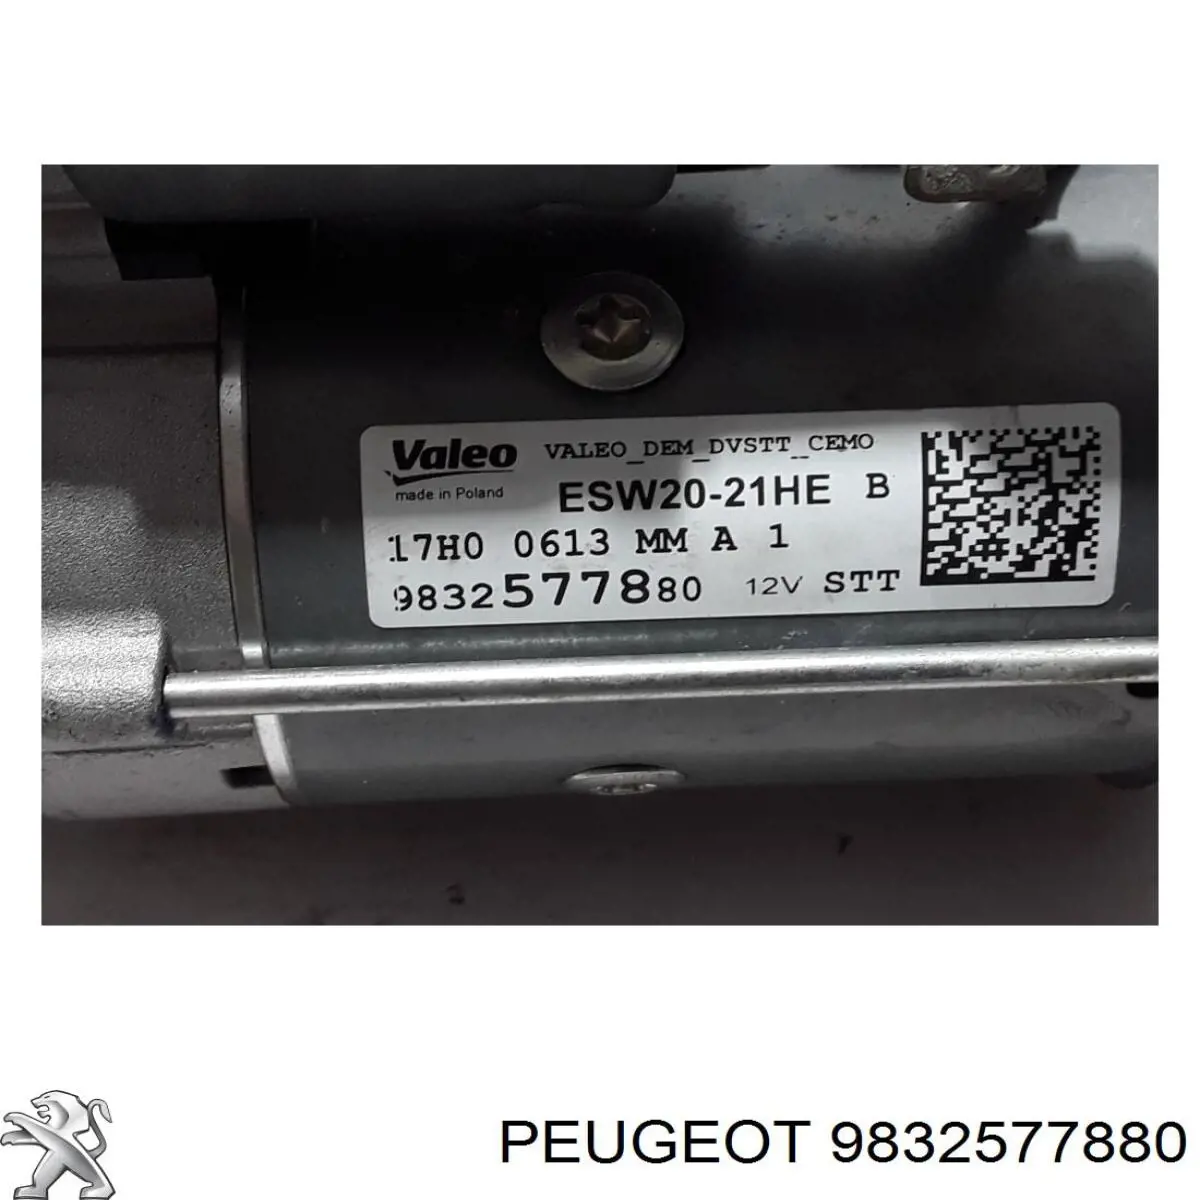 9832577880 Peugeot/Citroen motor de arranque